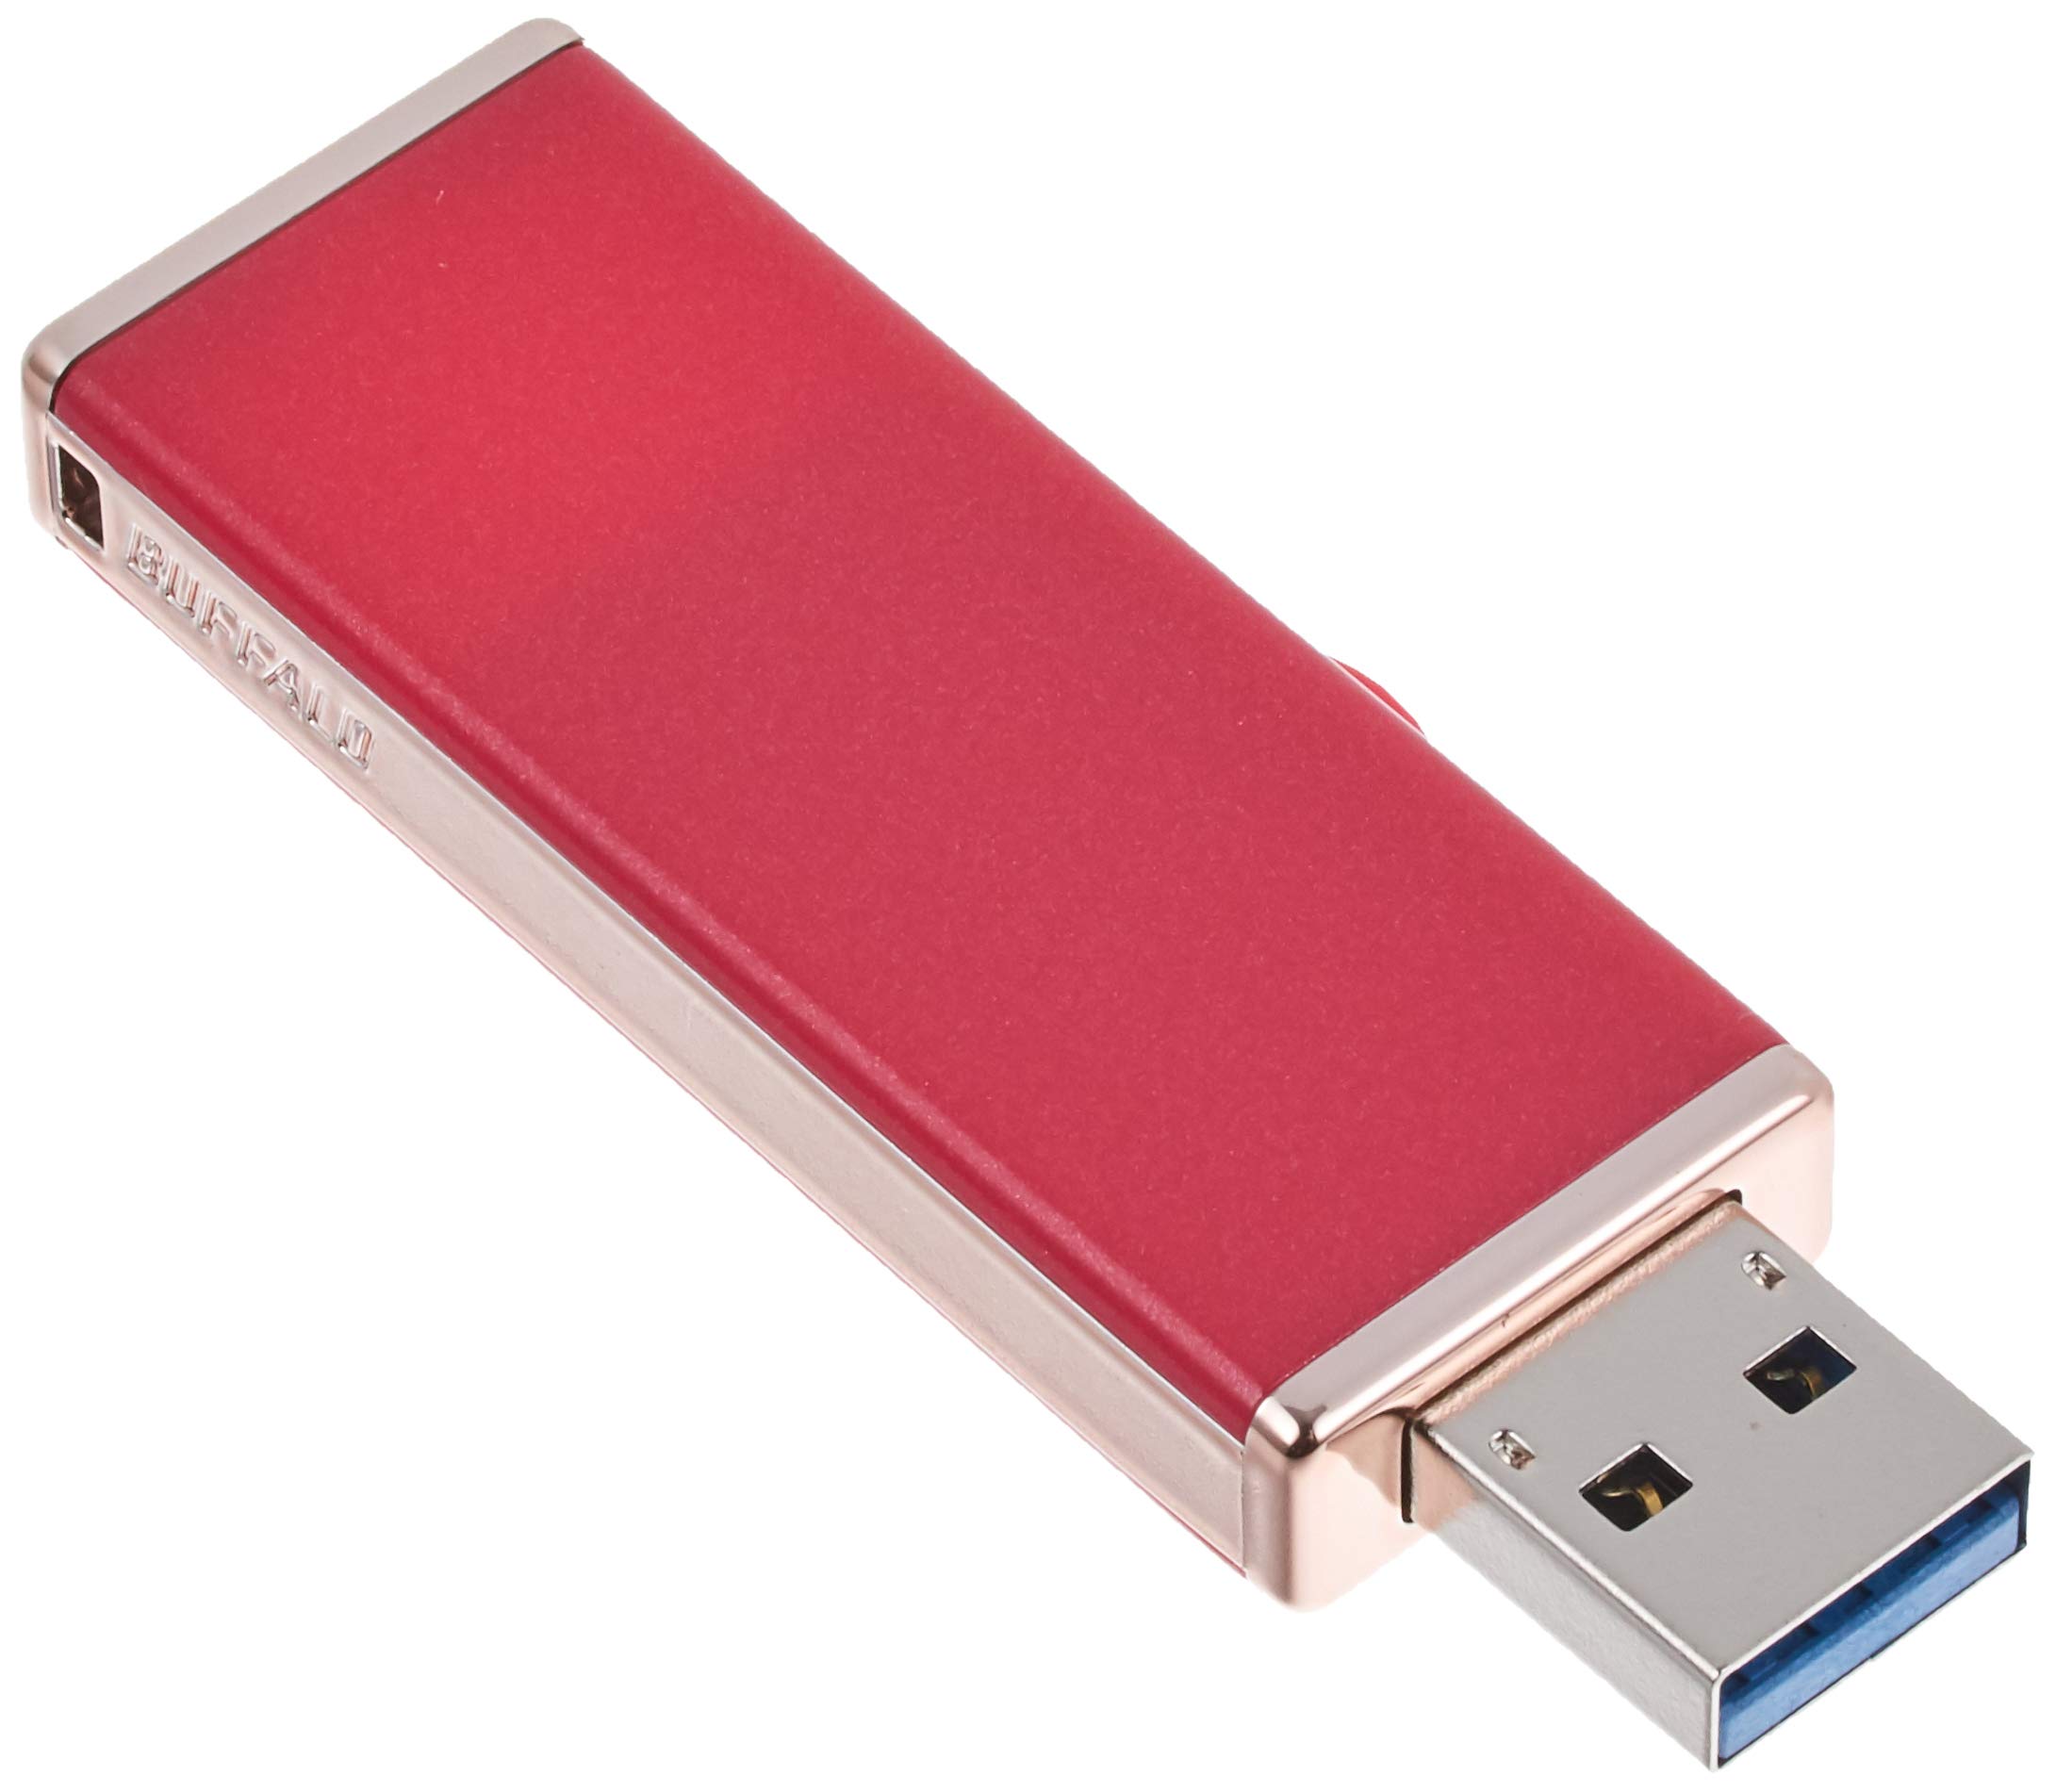 BUFFALO 女性向け キャップレスデザイン USB3.0用 USBメモリー 32GB グロスピンク RUF3-JW32G-GP